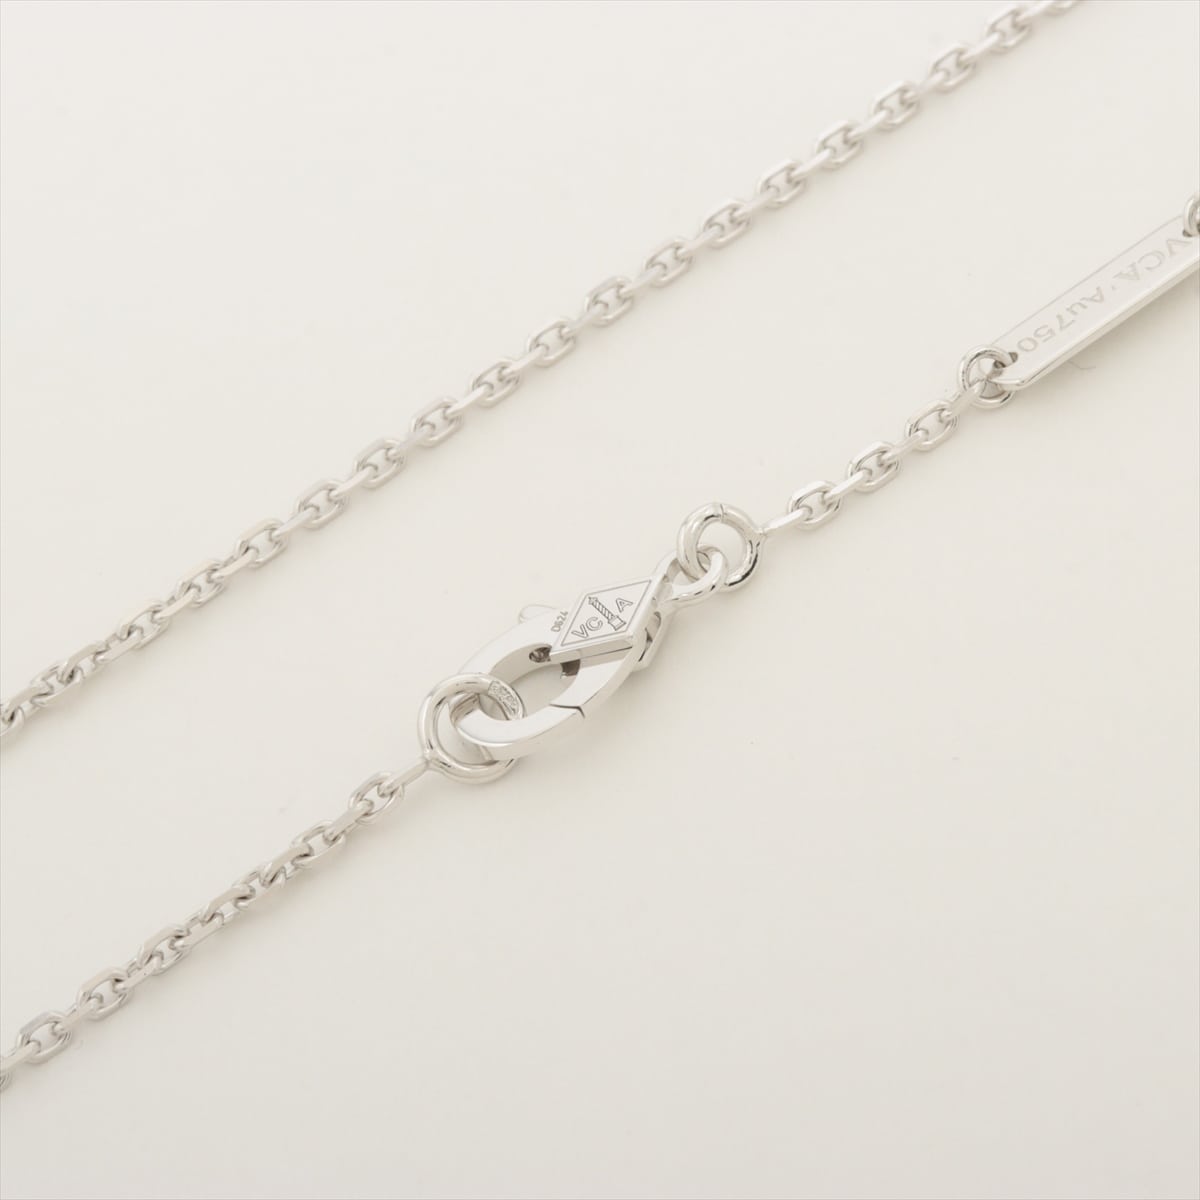 Van Cleef & Arpels Vintage Alhambra Sable diamond Necklace 750(WG) 7.1g